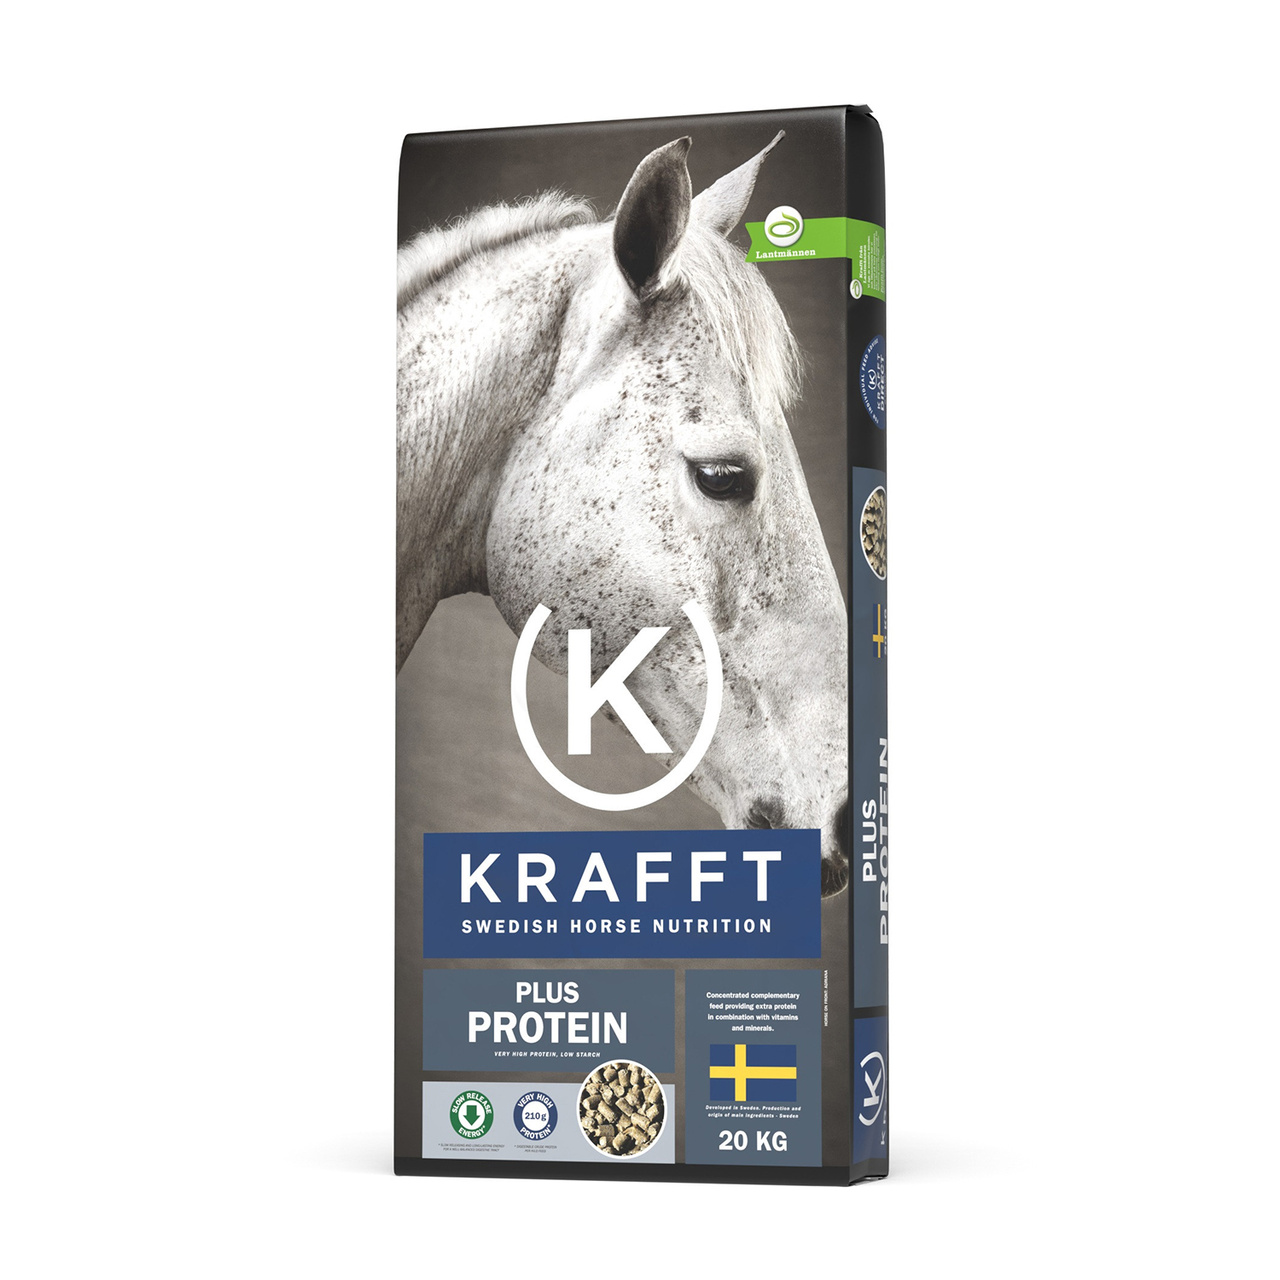 Krafft plus protein 20kg